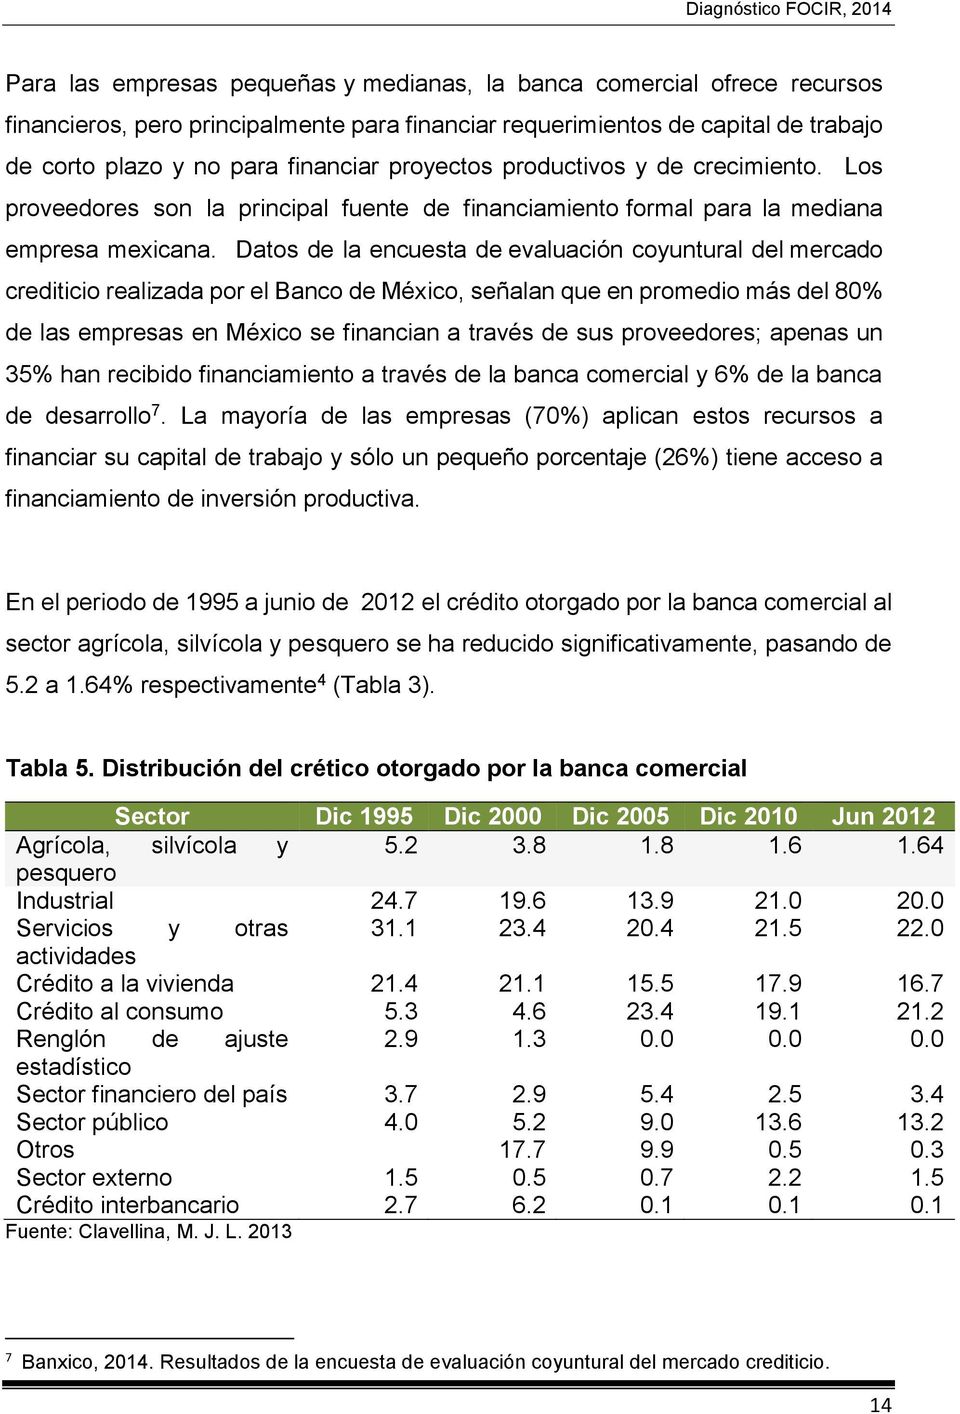 Datos de la encuesta de evaluación coyuntural del mercado crediticio realizada por el Banco de México, señalan que en promedio más del 80% de las empresas en México se financian a través de sus